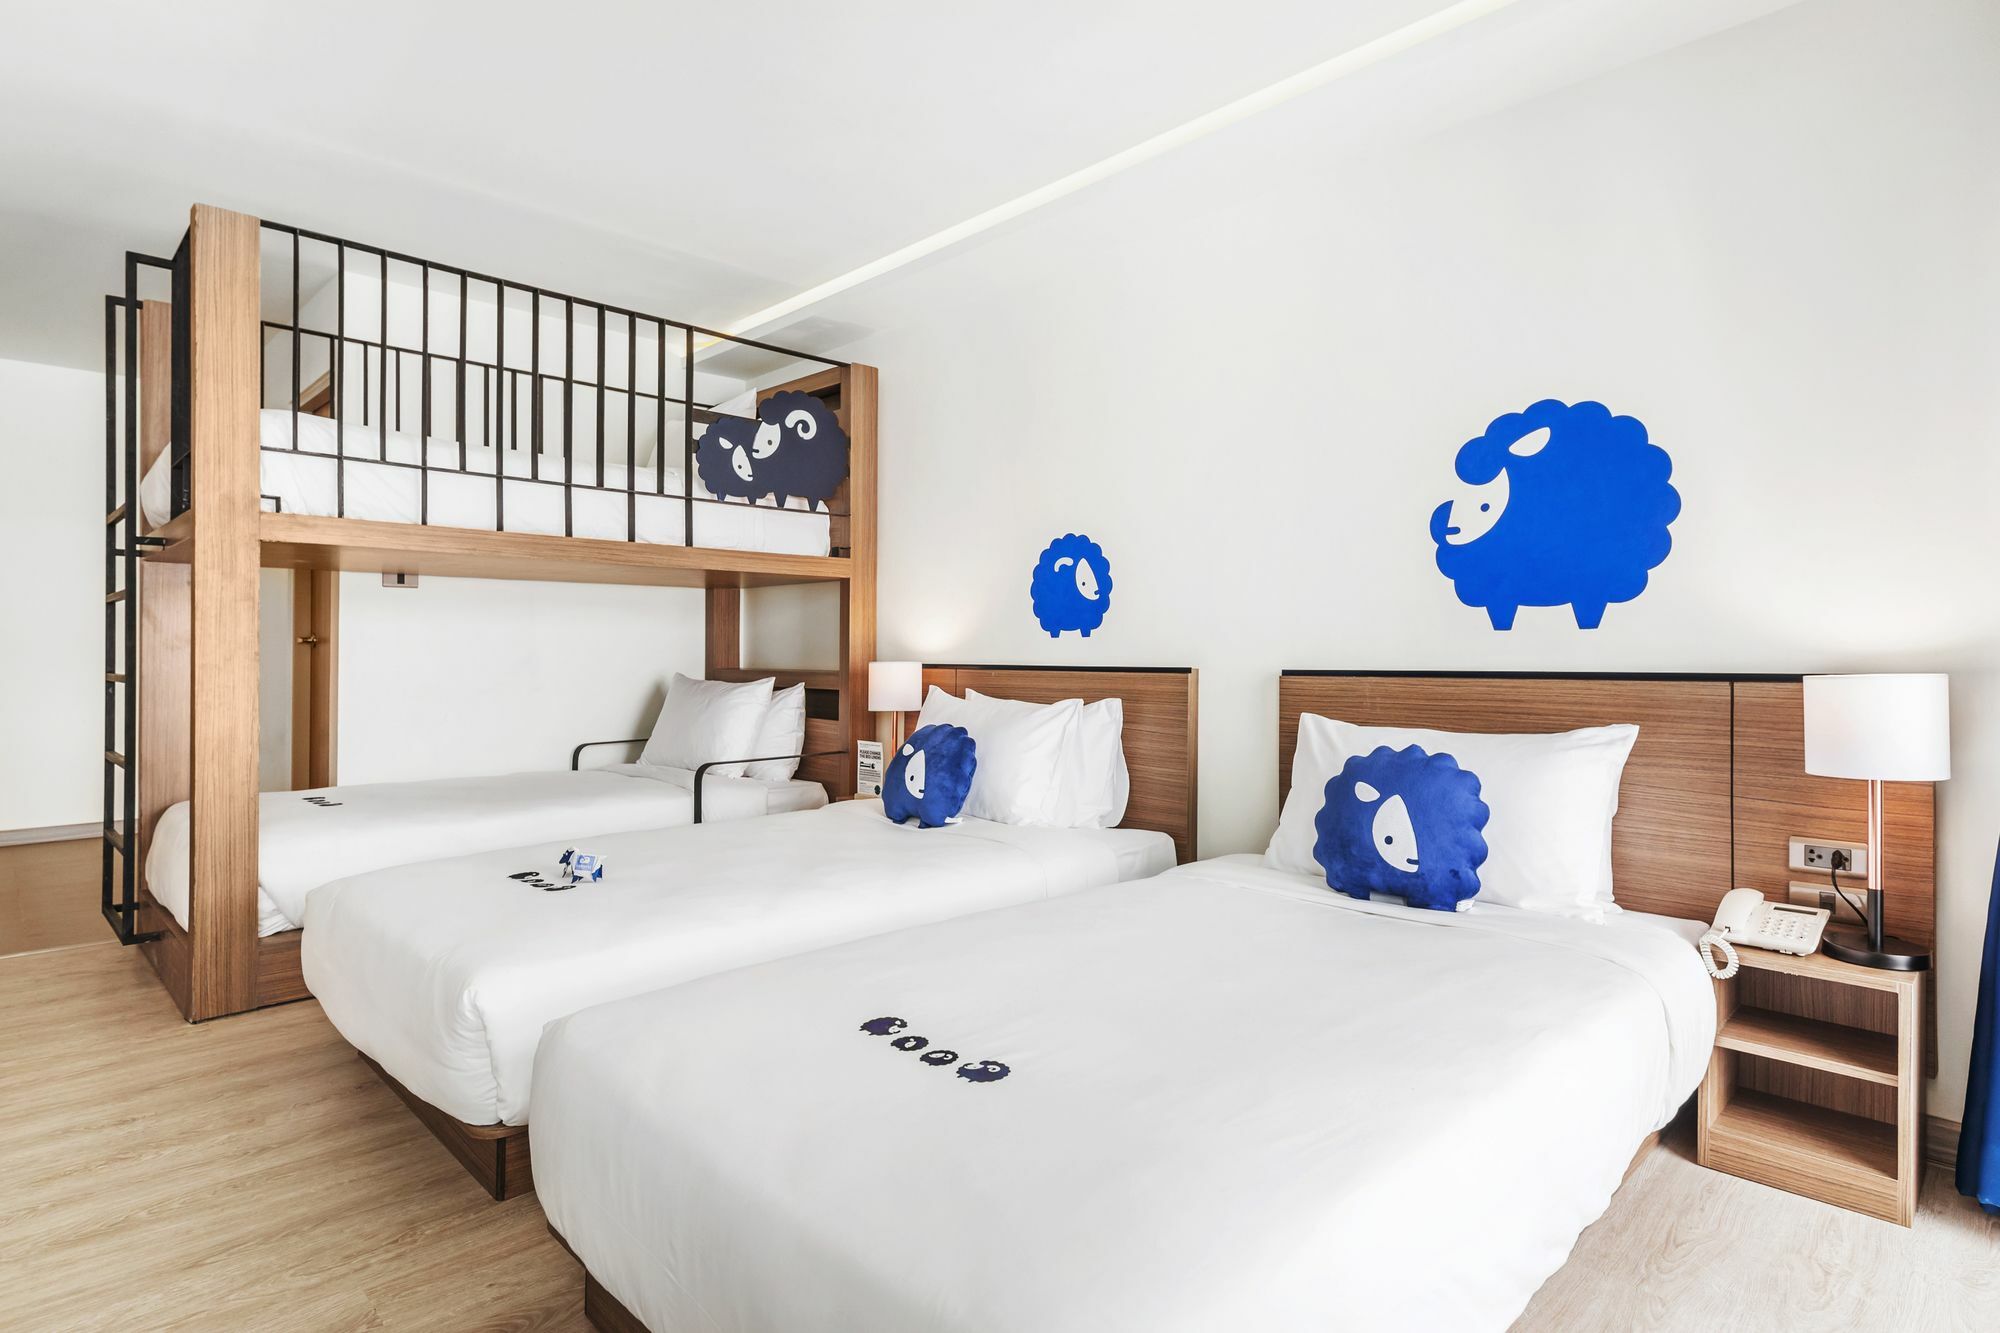 โรงแรม KOKOTEL CHIANG MAI NIMMAN เชียงใหม่ 3* (ไทย) | HOTELMIX